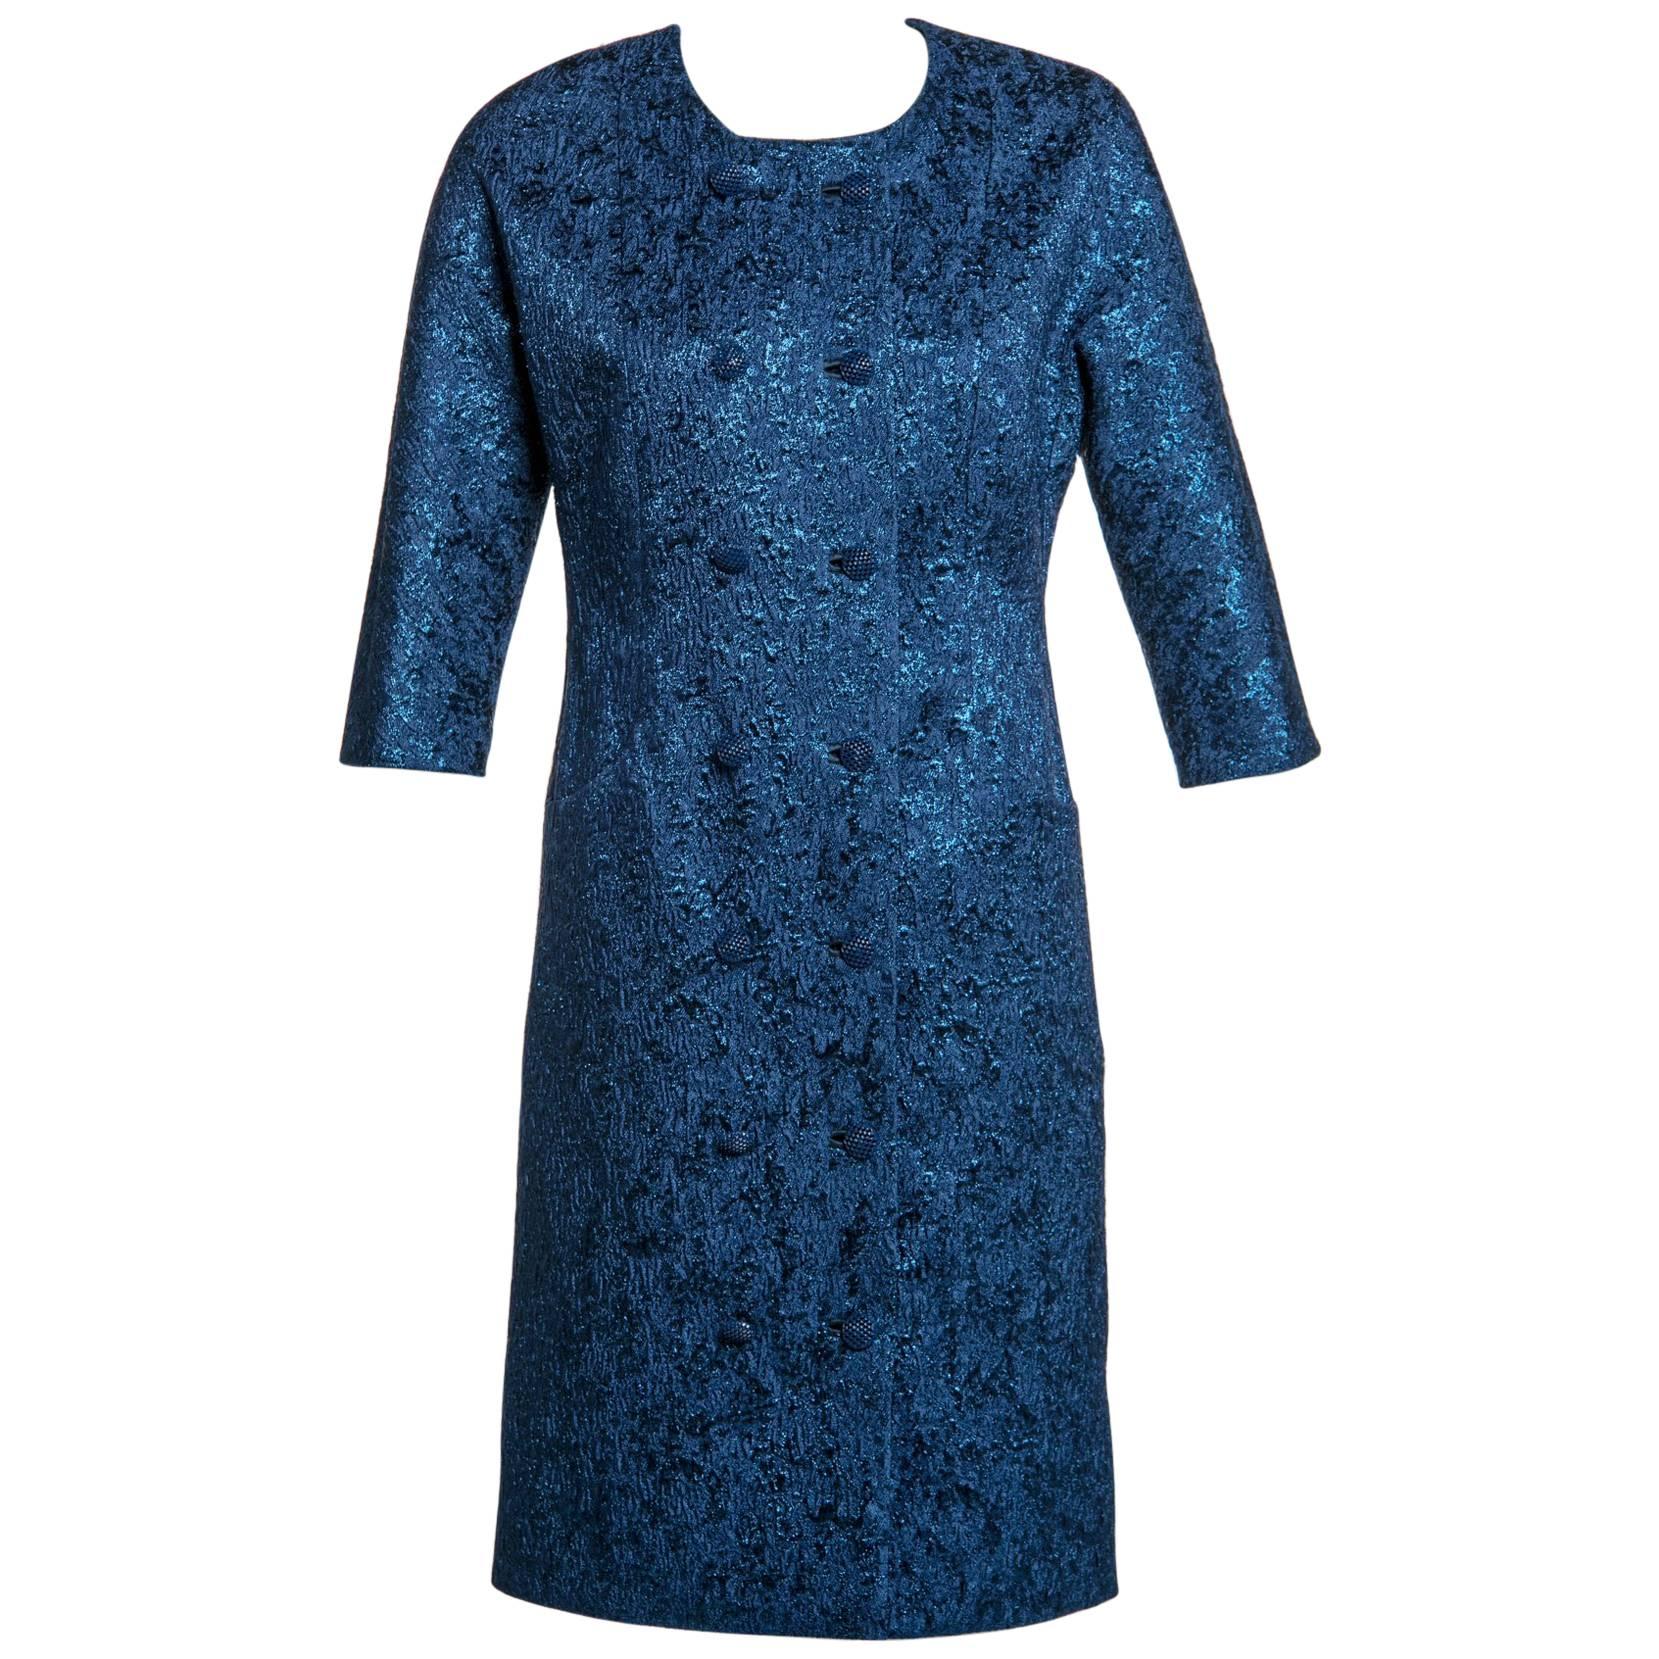 Balenciaga Manteau de soirée couture édition couture matelassé bleu saphir à couture princesse en vente